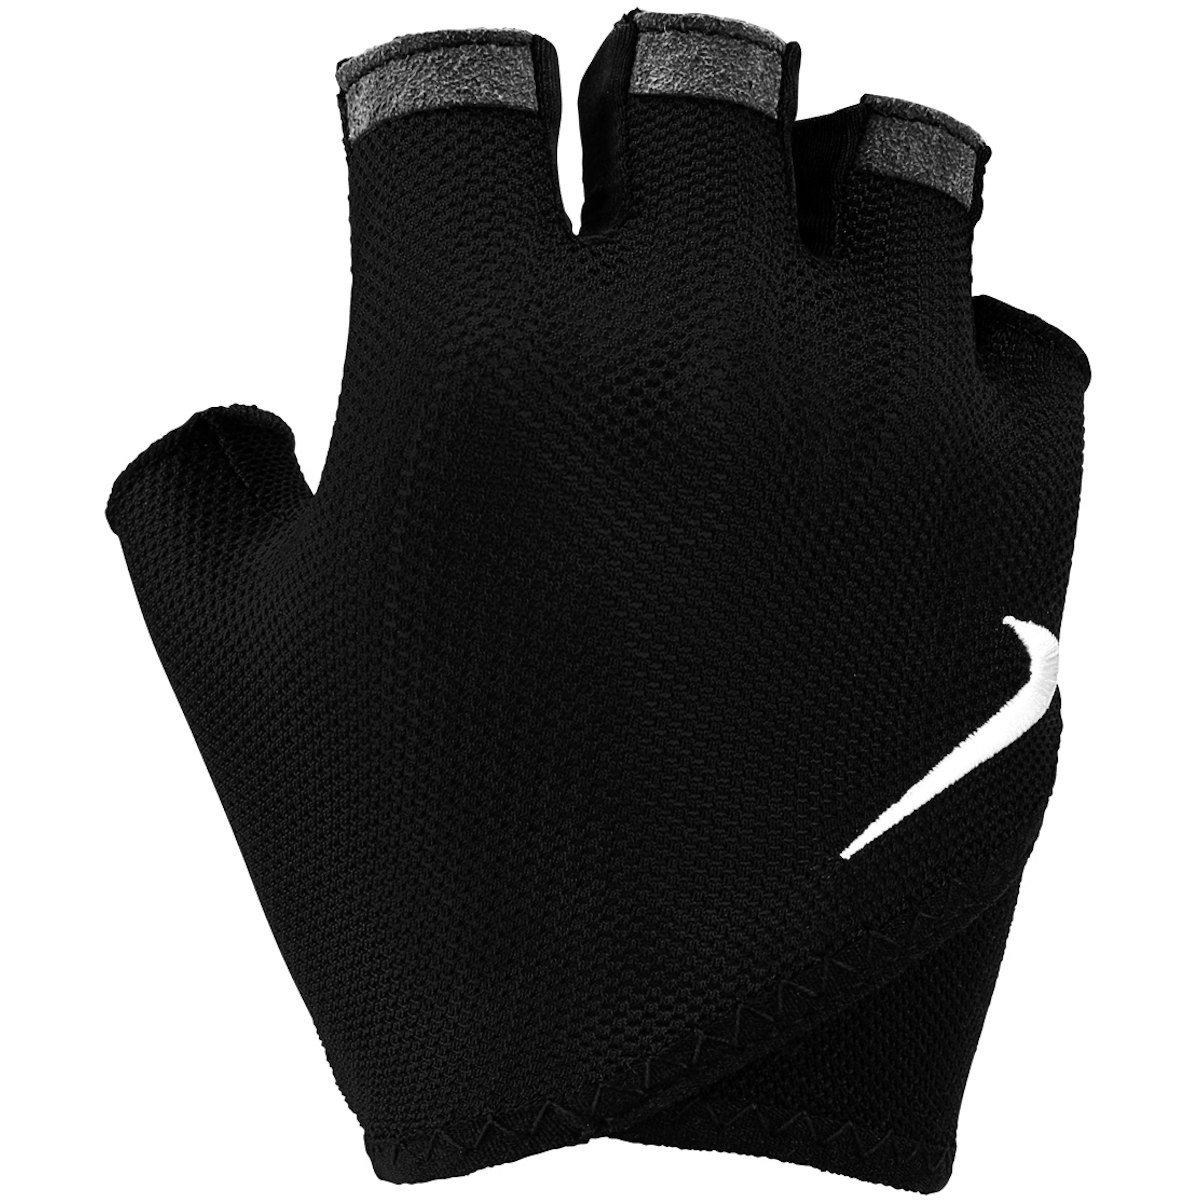 Productfoto van Nike Dames Printed Gym Essential Fitness-Handschoenen - zwart/wit 010